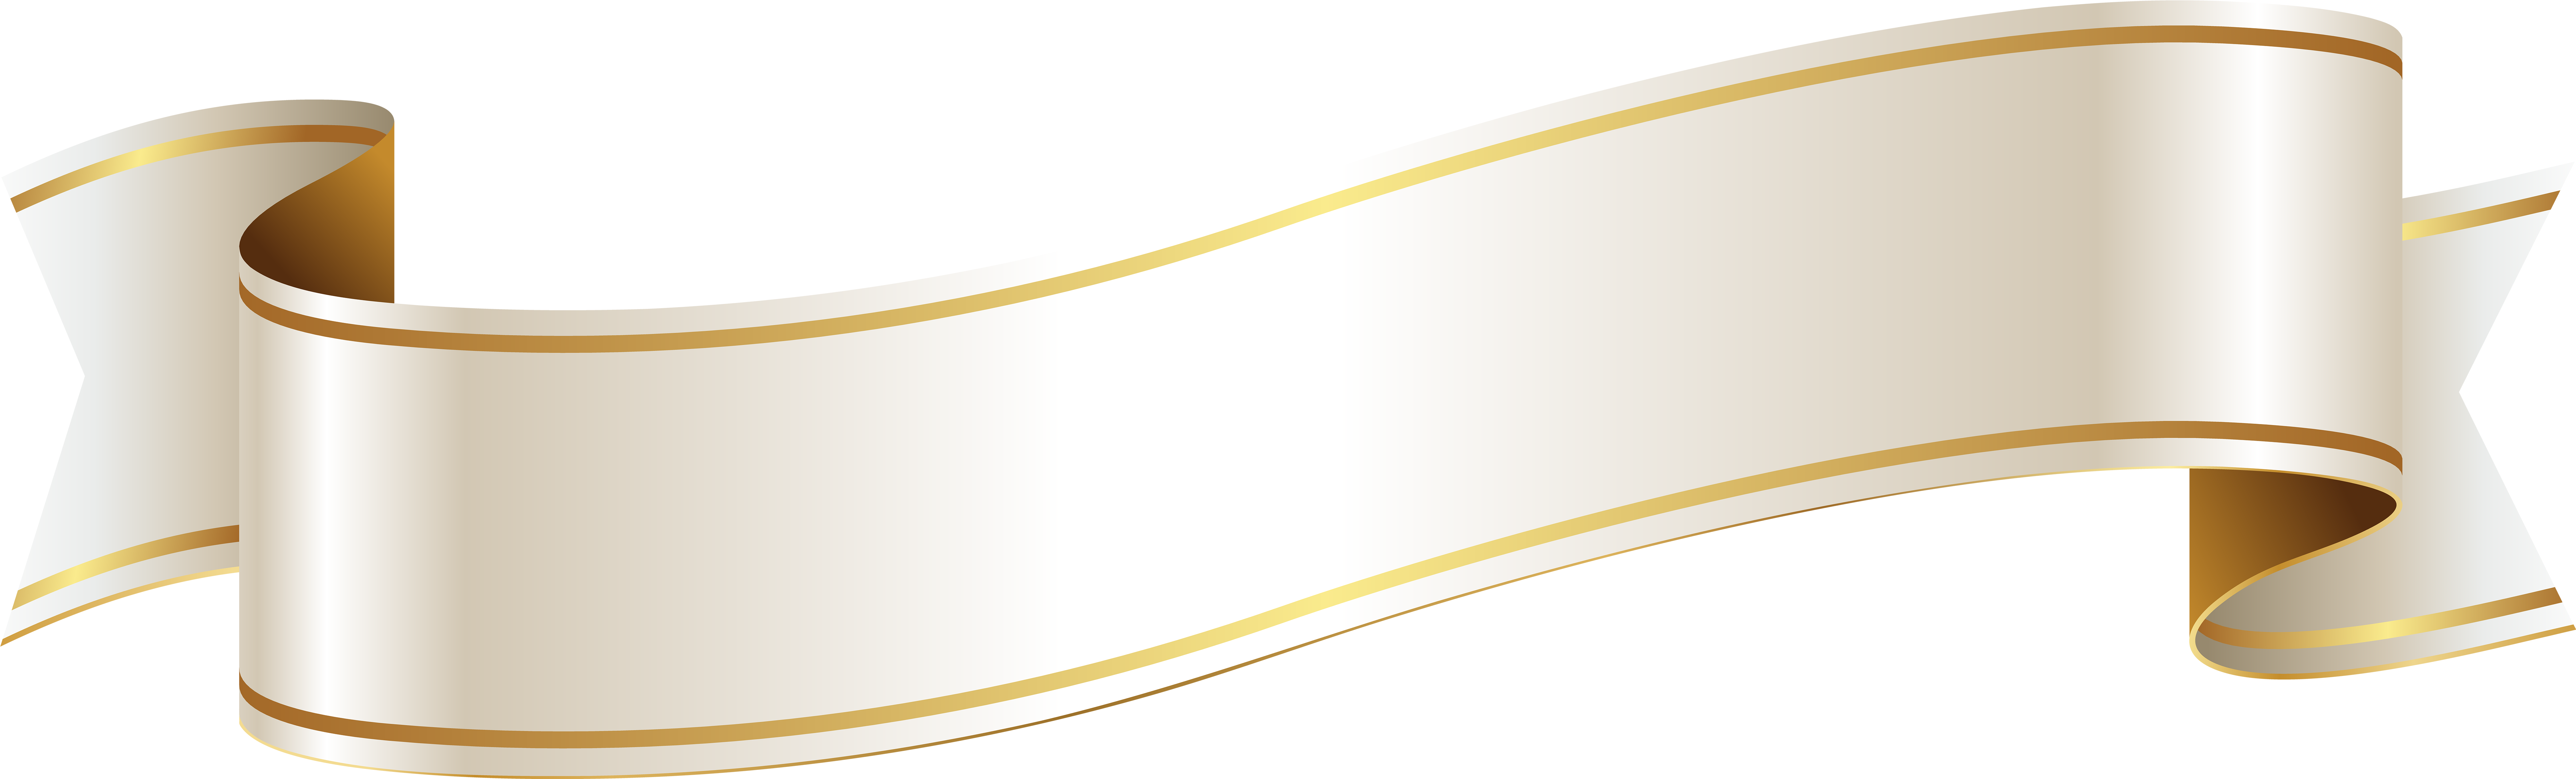 Золотая ленточка на прозрачном фоне фото